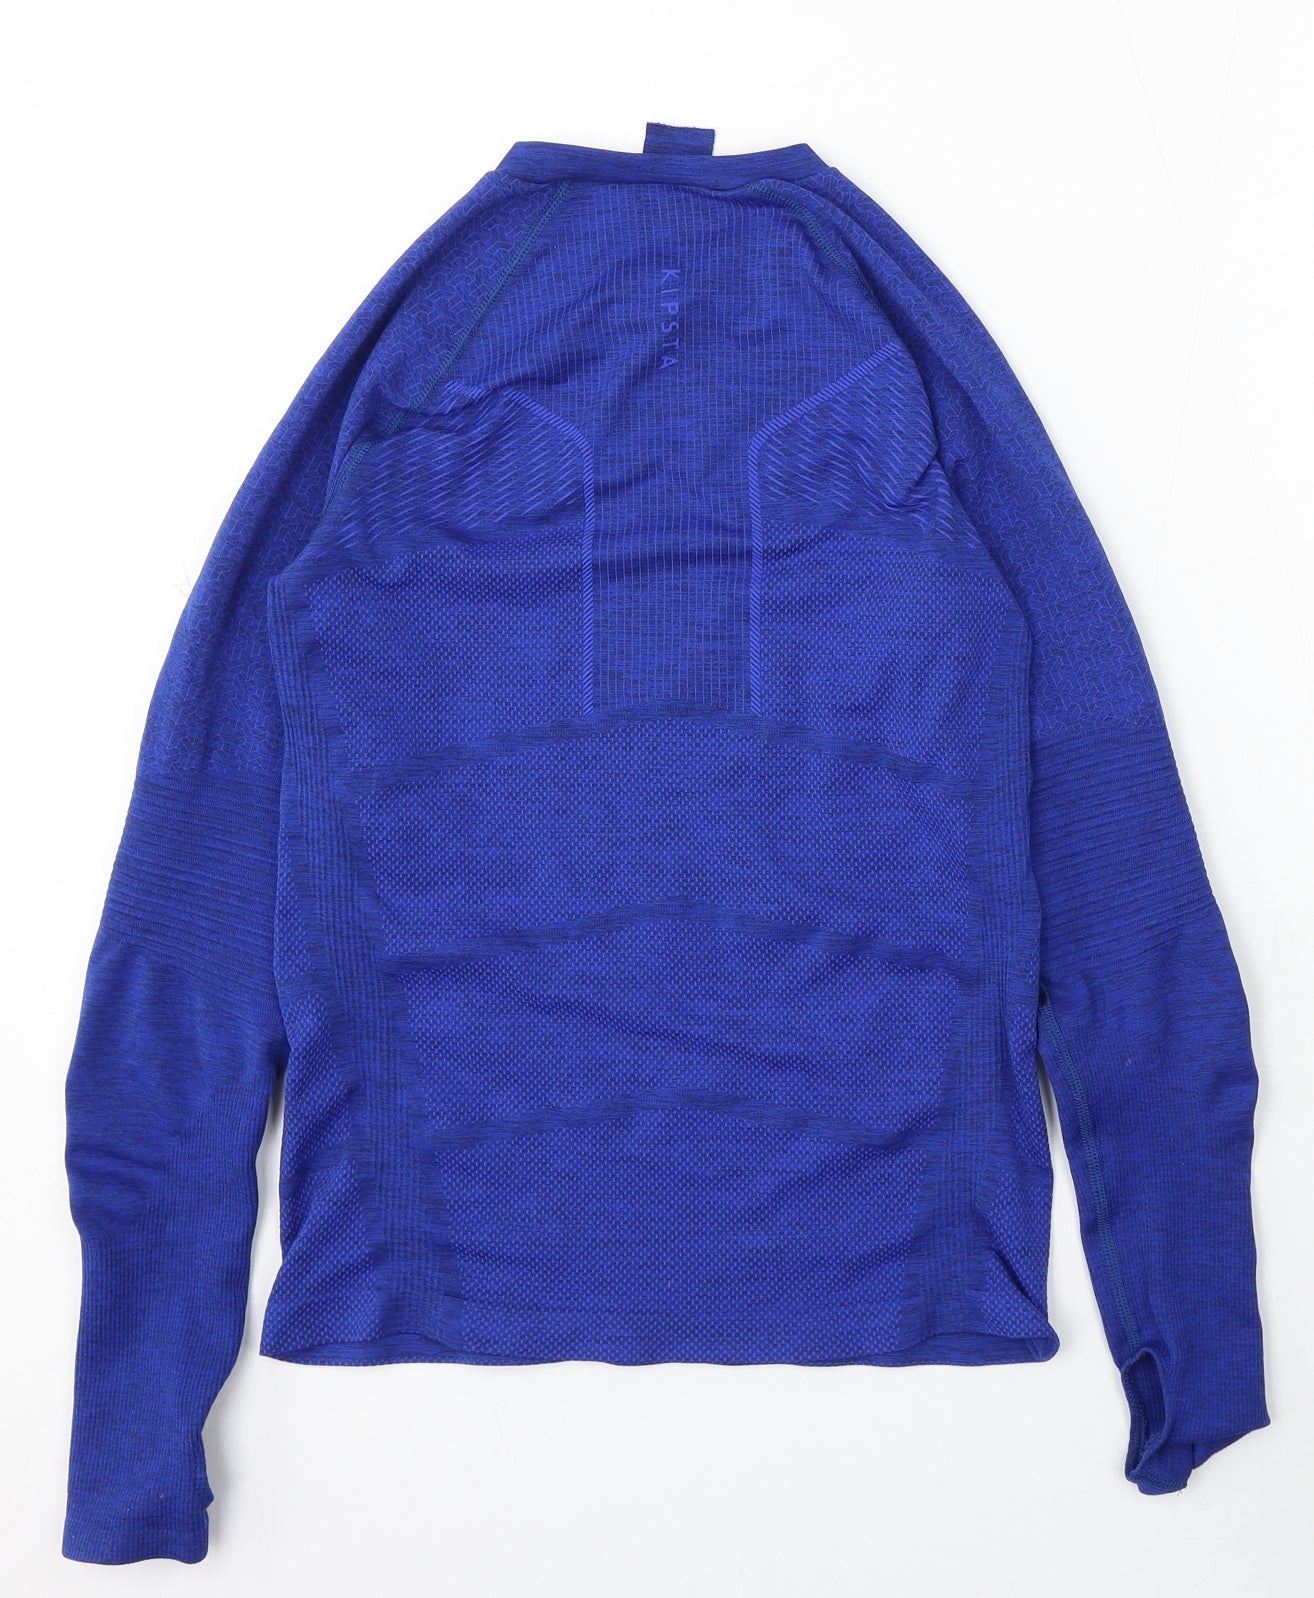 Kipsta Boys Blue Polyester Basic T-Shirt Size 14-15 Years V-Neck